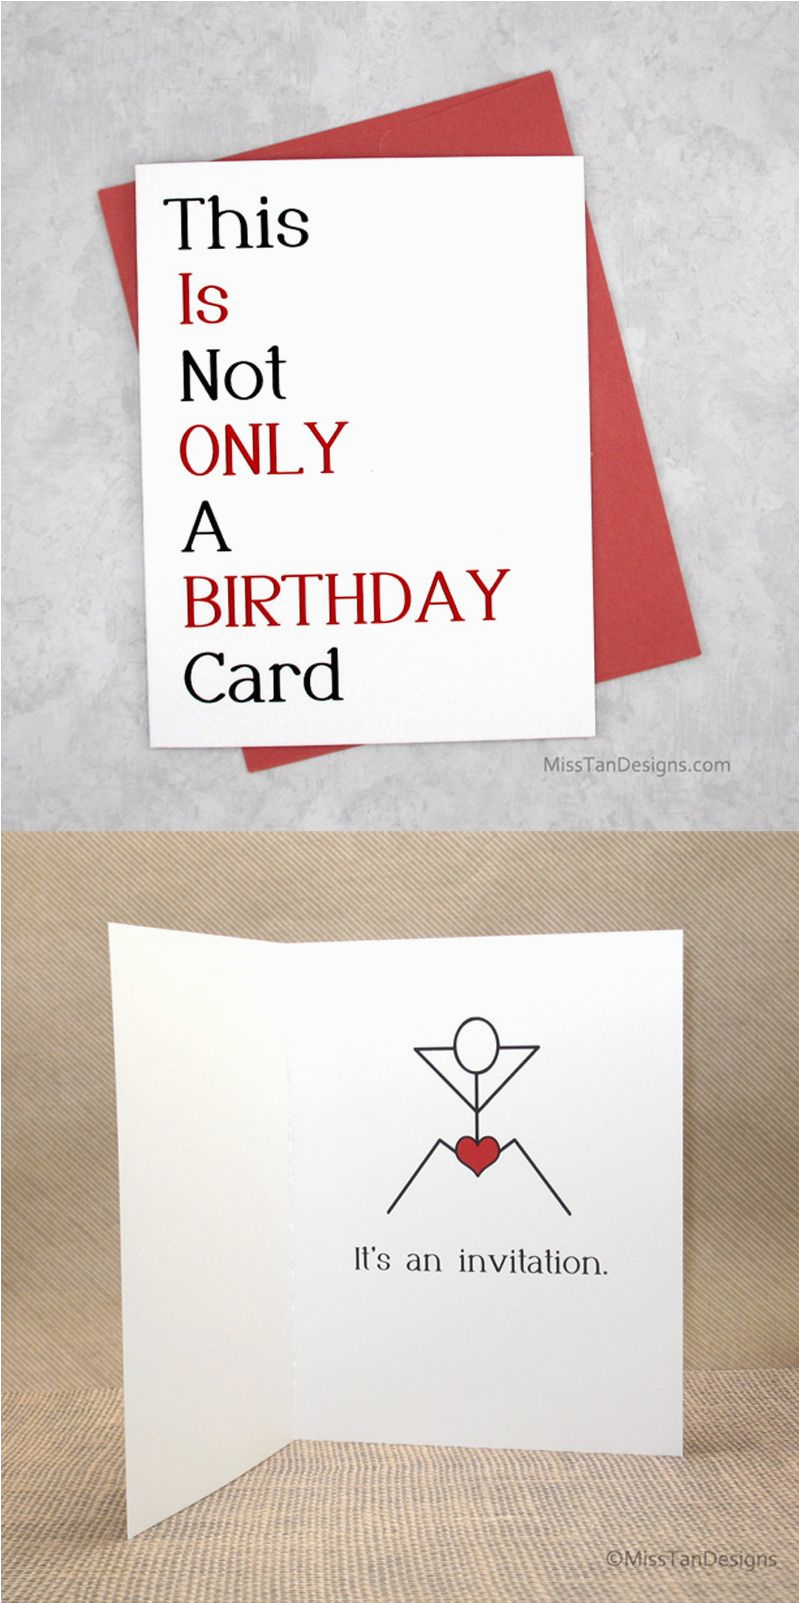 birthday-card-boyfriend-card-funny-birthday-card-by-boyfriend-birthday-card-funny-birthday